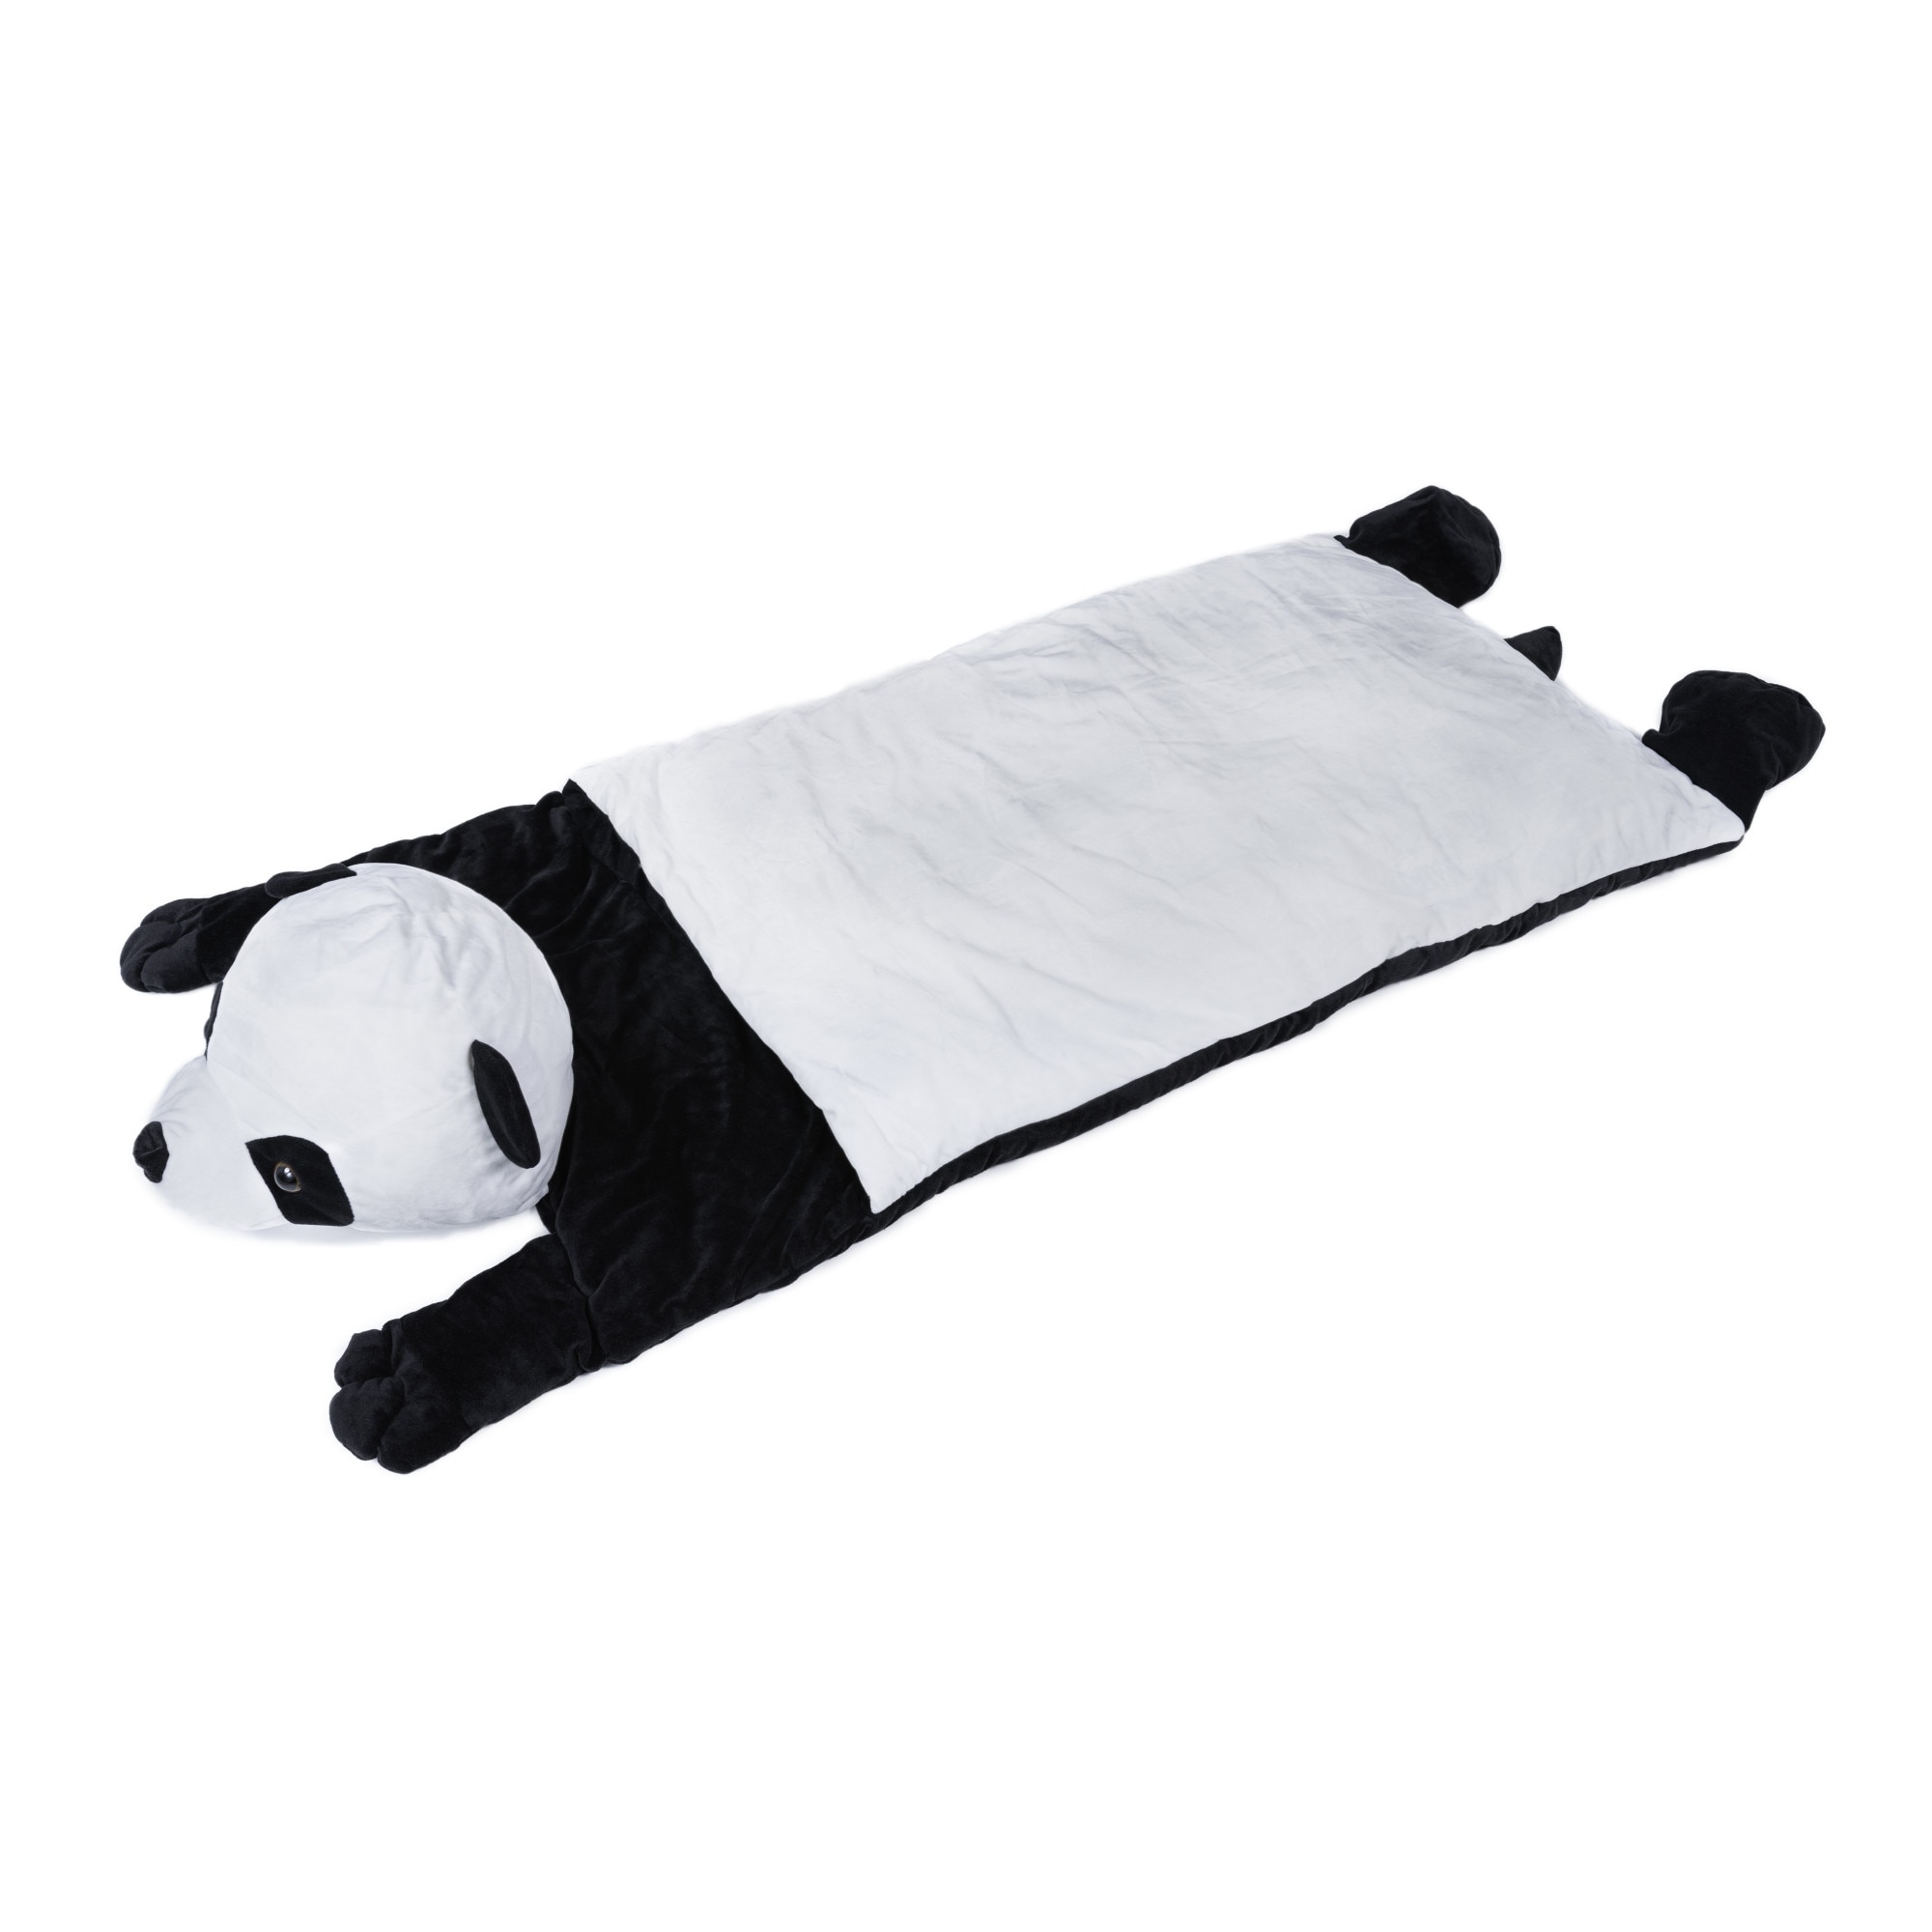 Sac de dormit copii, jucarie Super Cute Kido, alb/negru, 140 x 65 cm -